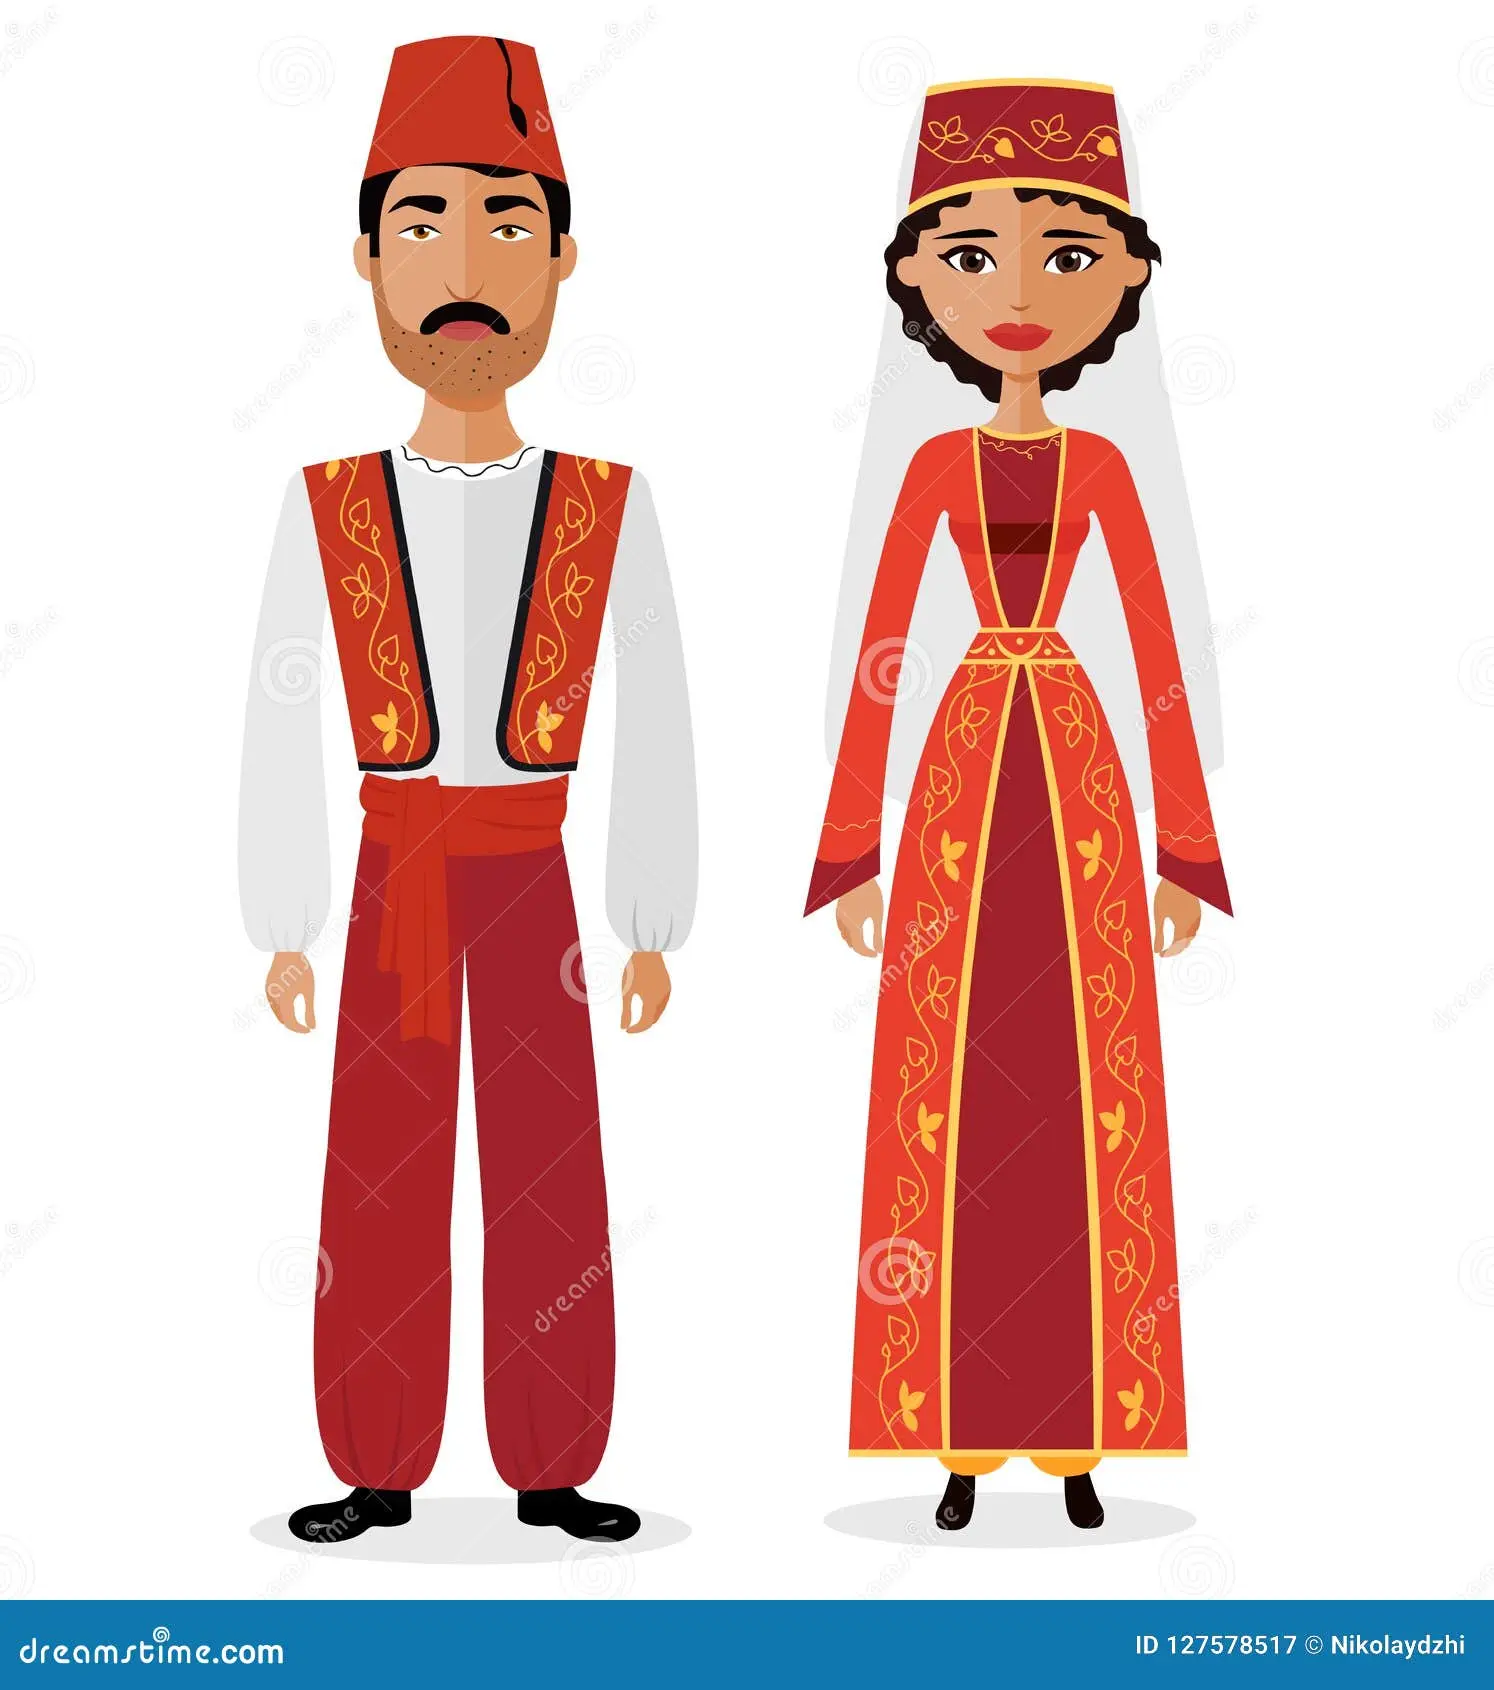 vestimenta de turquia - Cómo se llama la ropa que usan los turcos